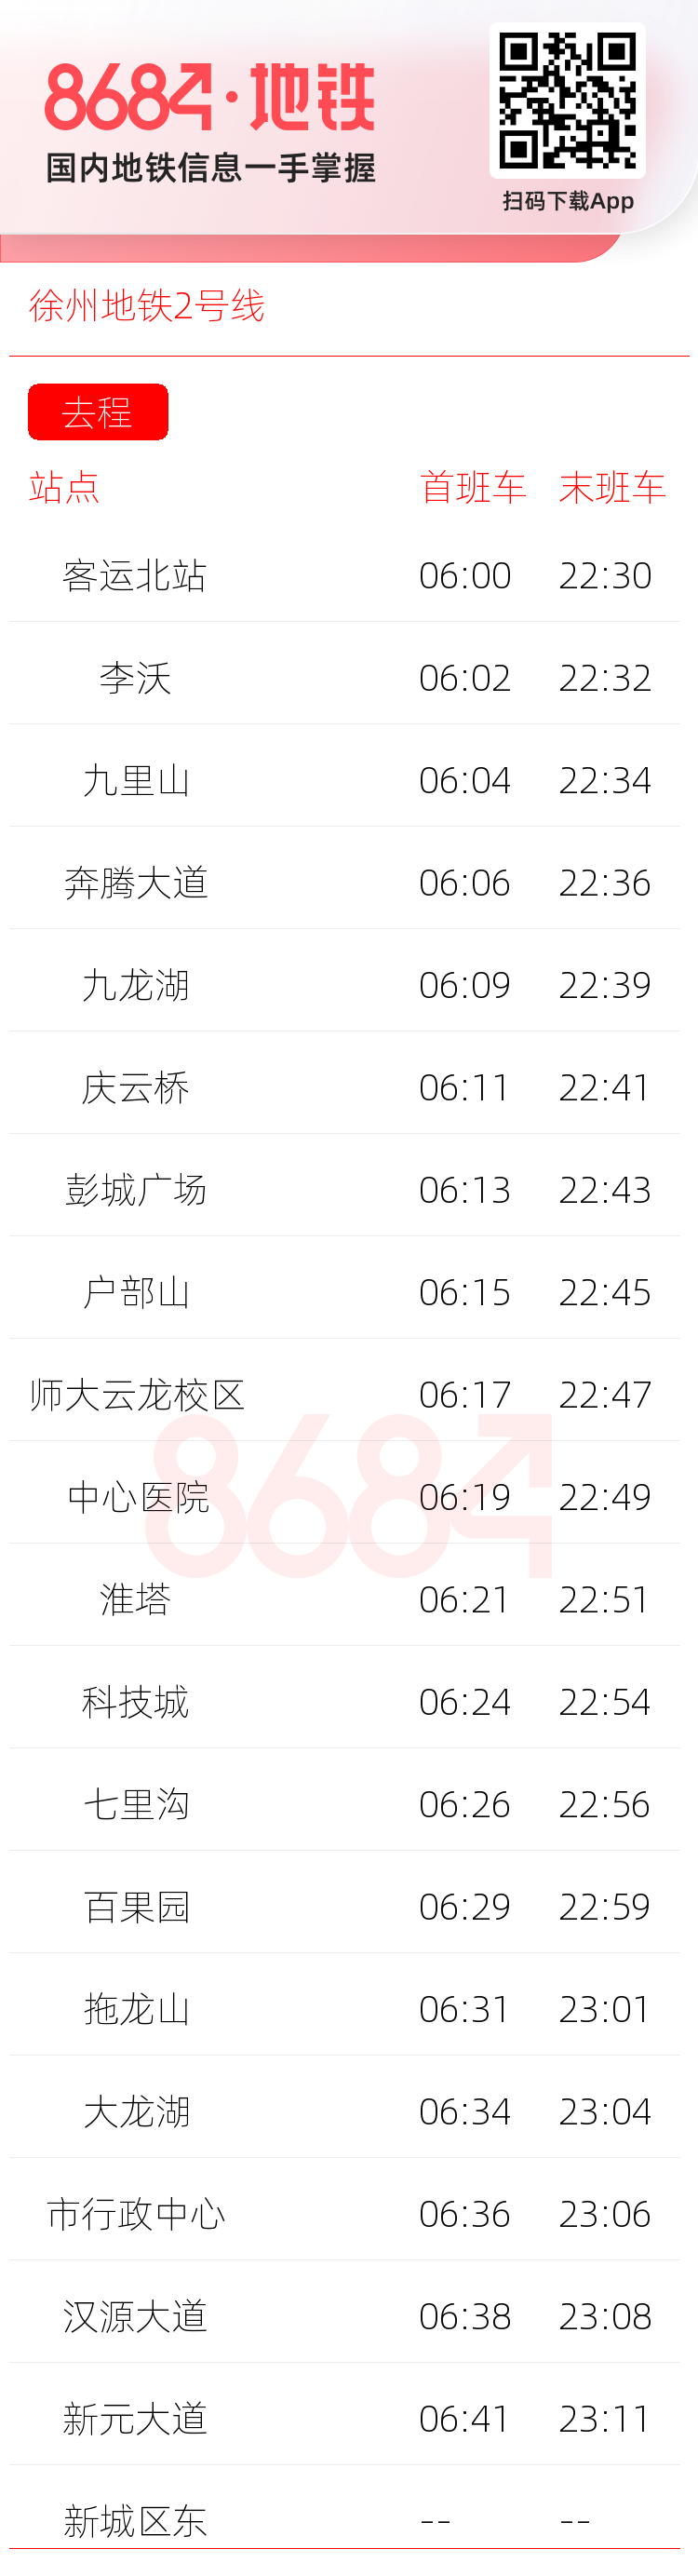 徐州地铁2号线运营时间表